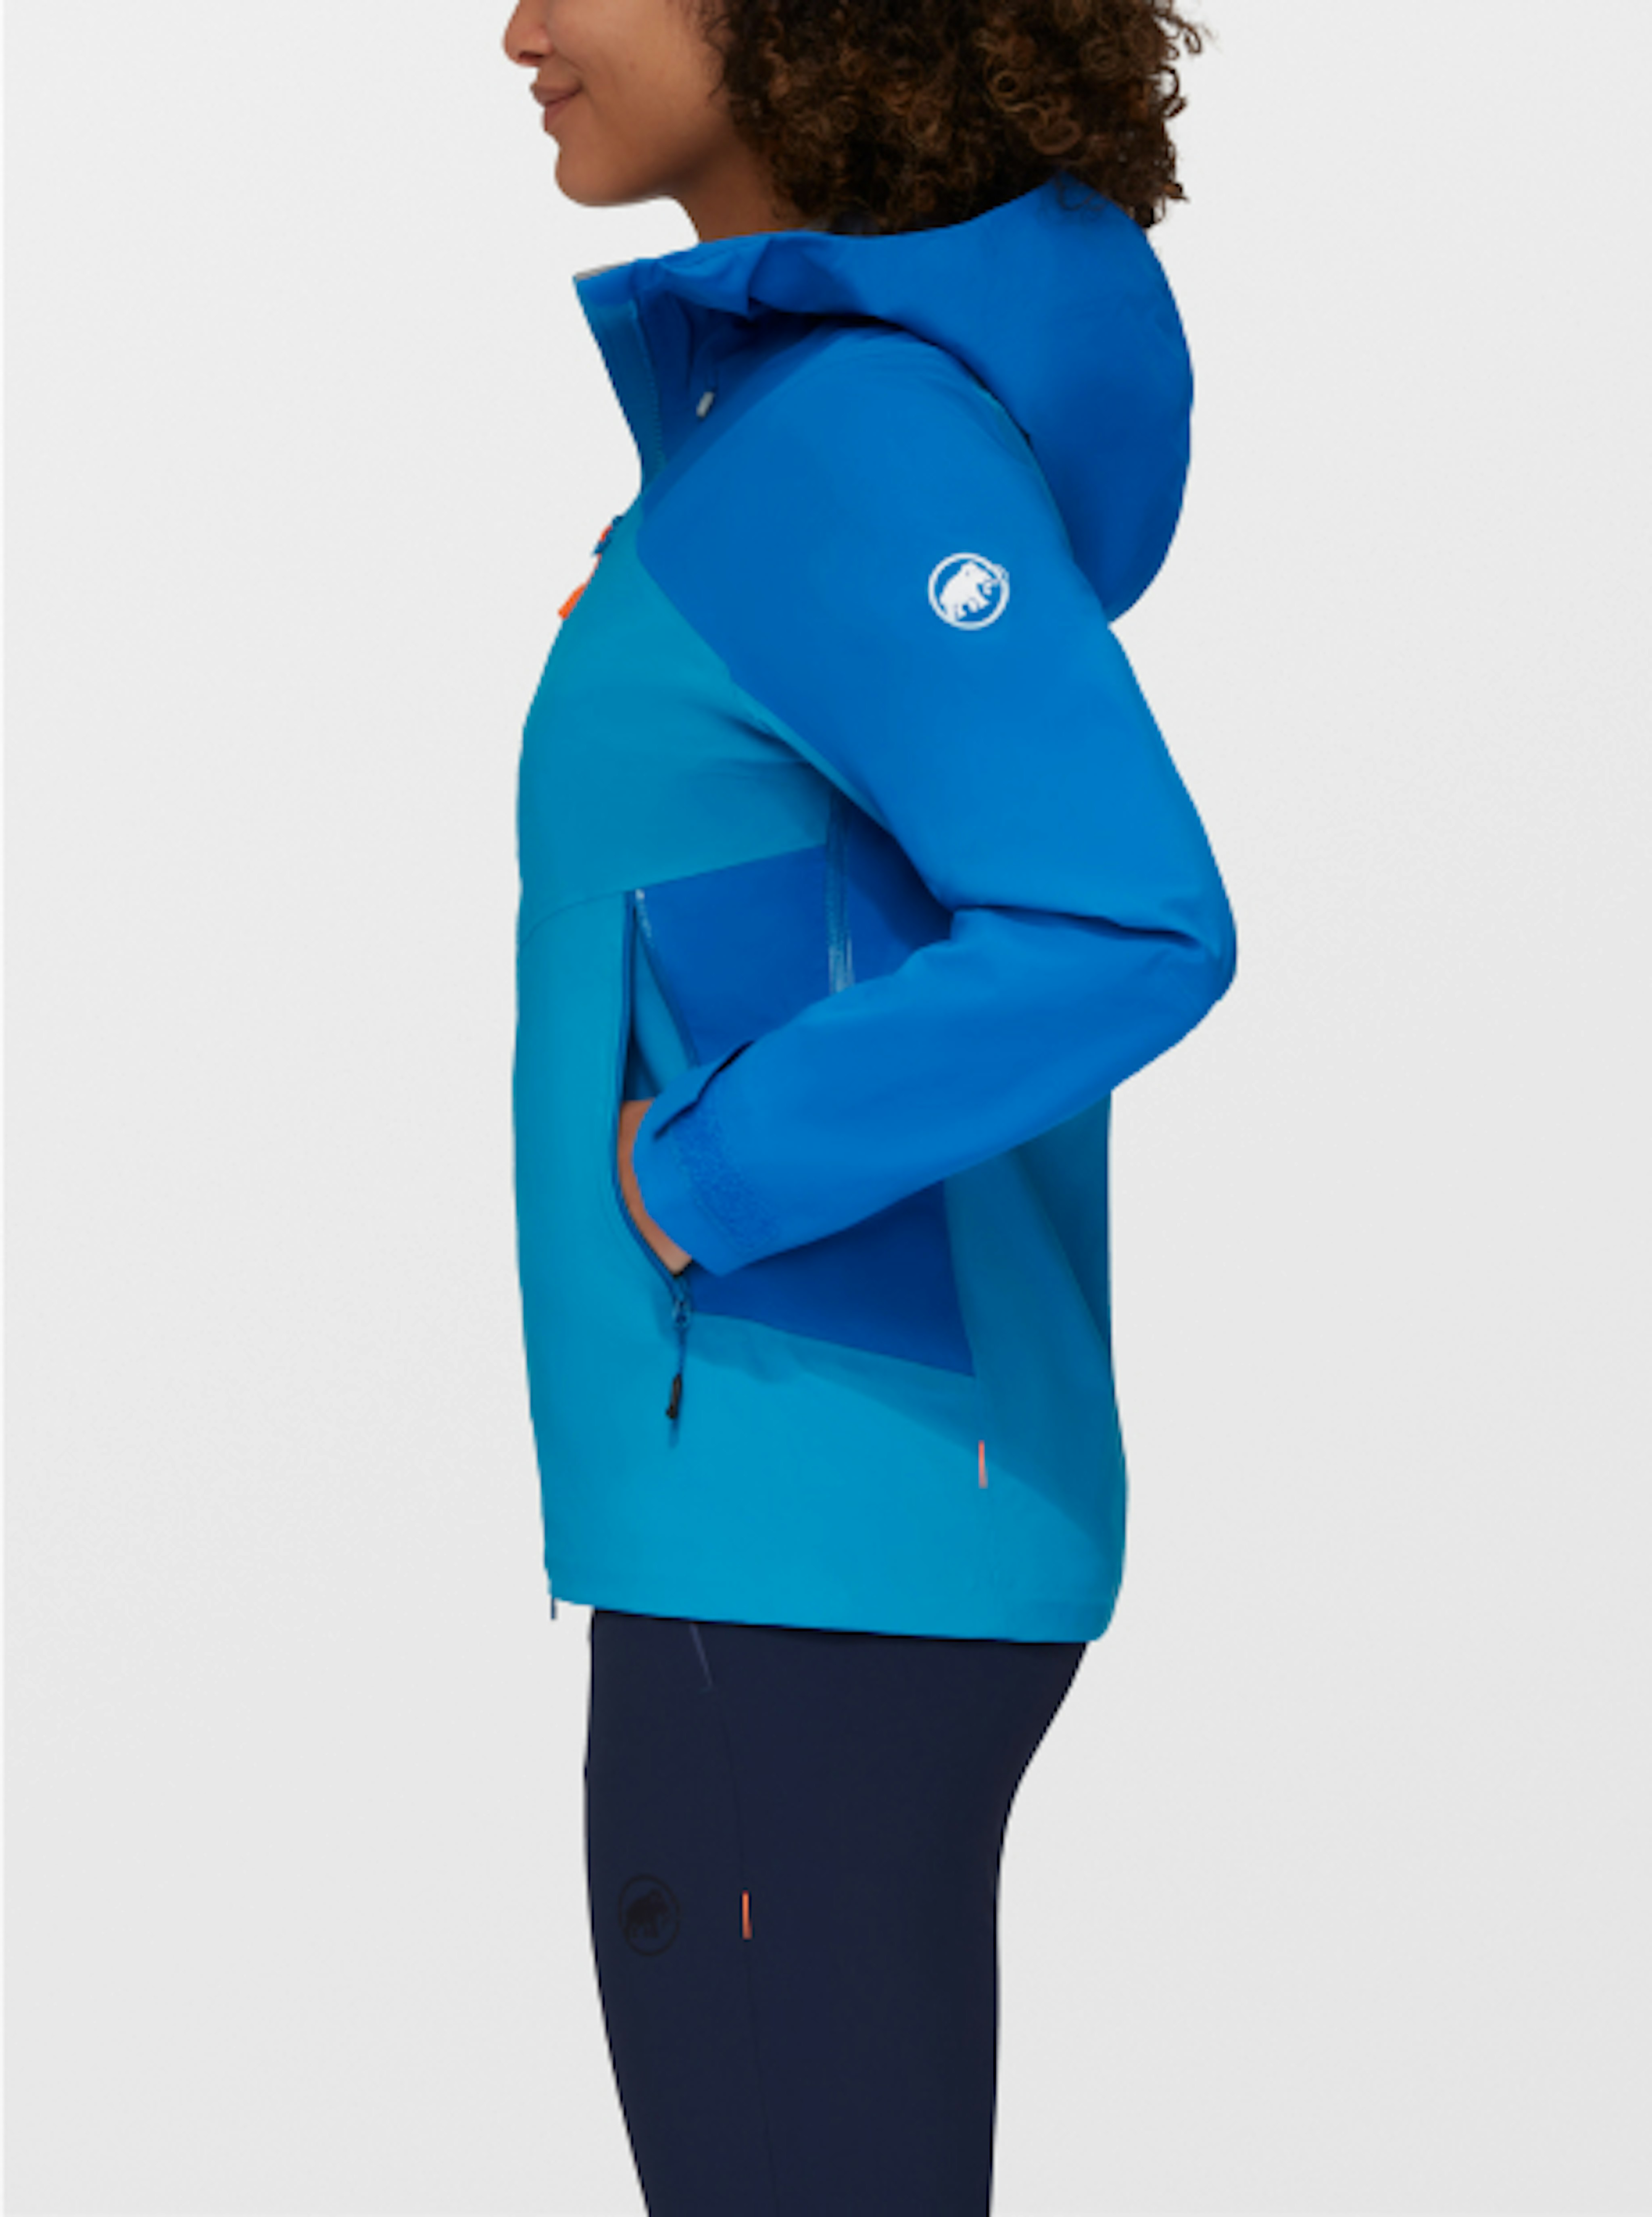 Mammut jacket for women in blue